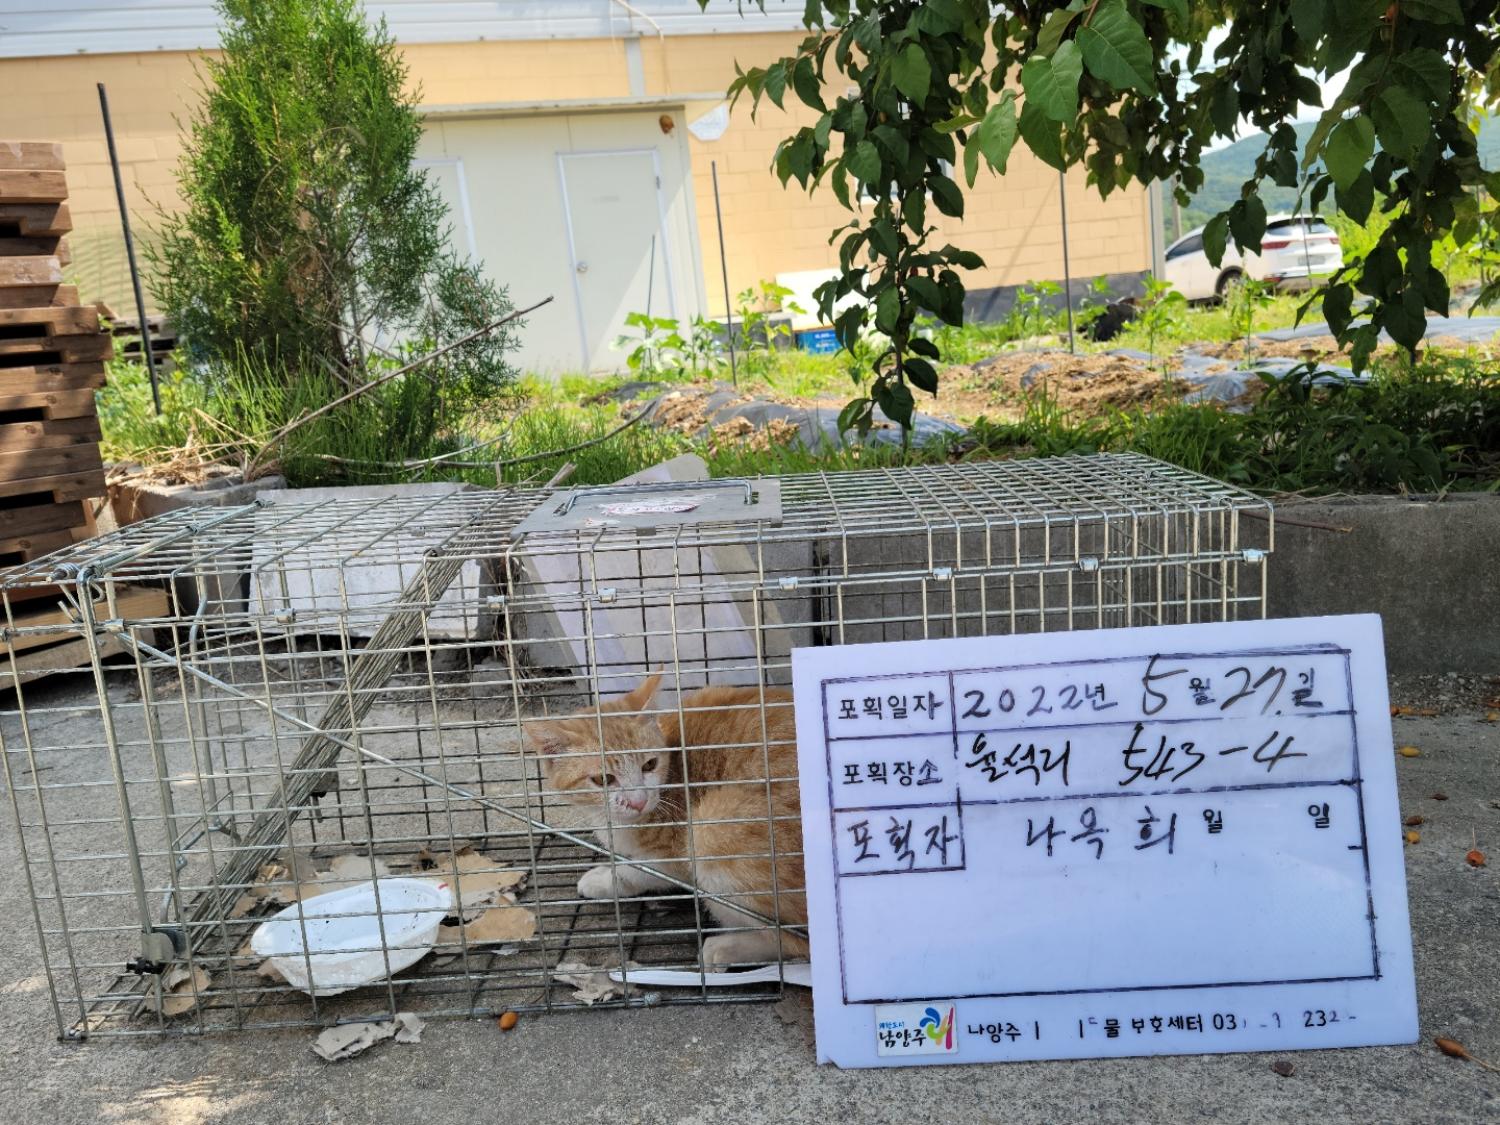 보호중동물사진 공고번호-경기-남양주-2022-00683